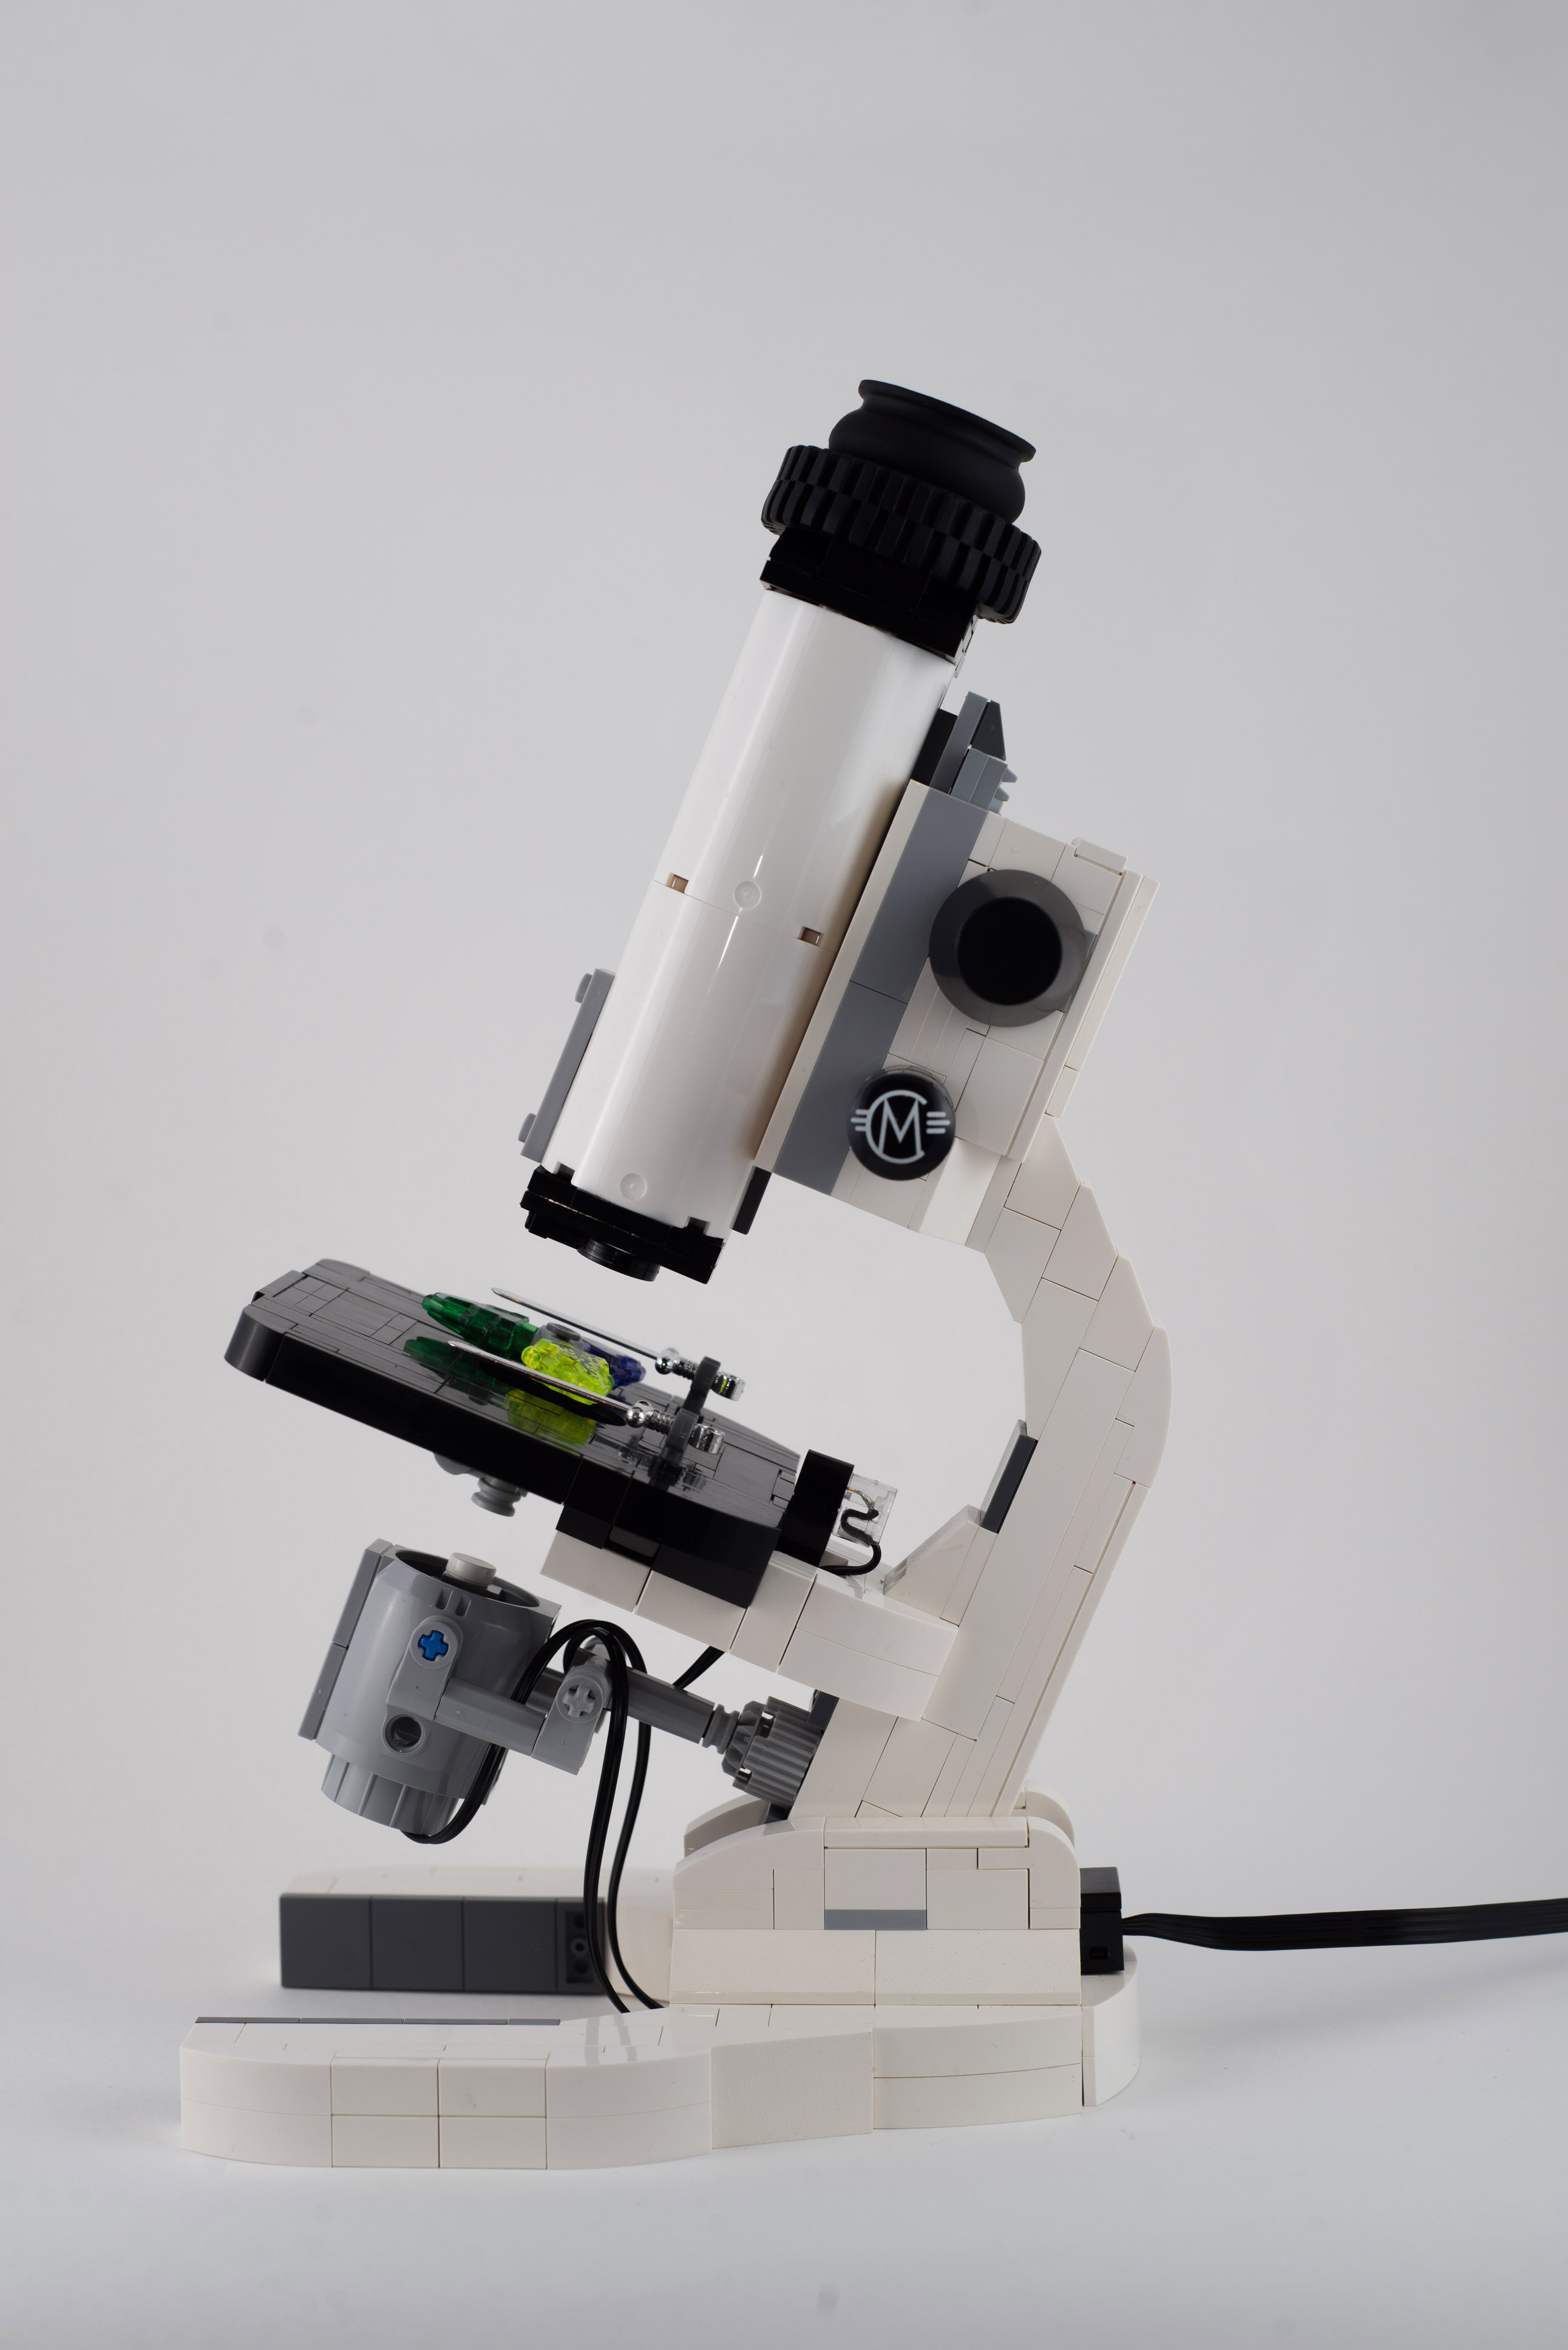 microscopio-lego-crowdfunding-com-limao-01